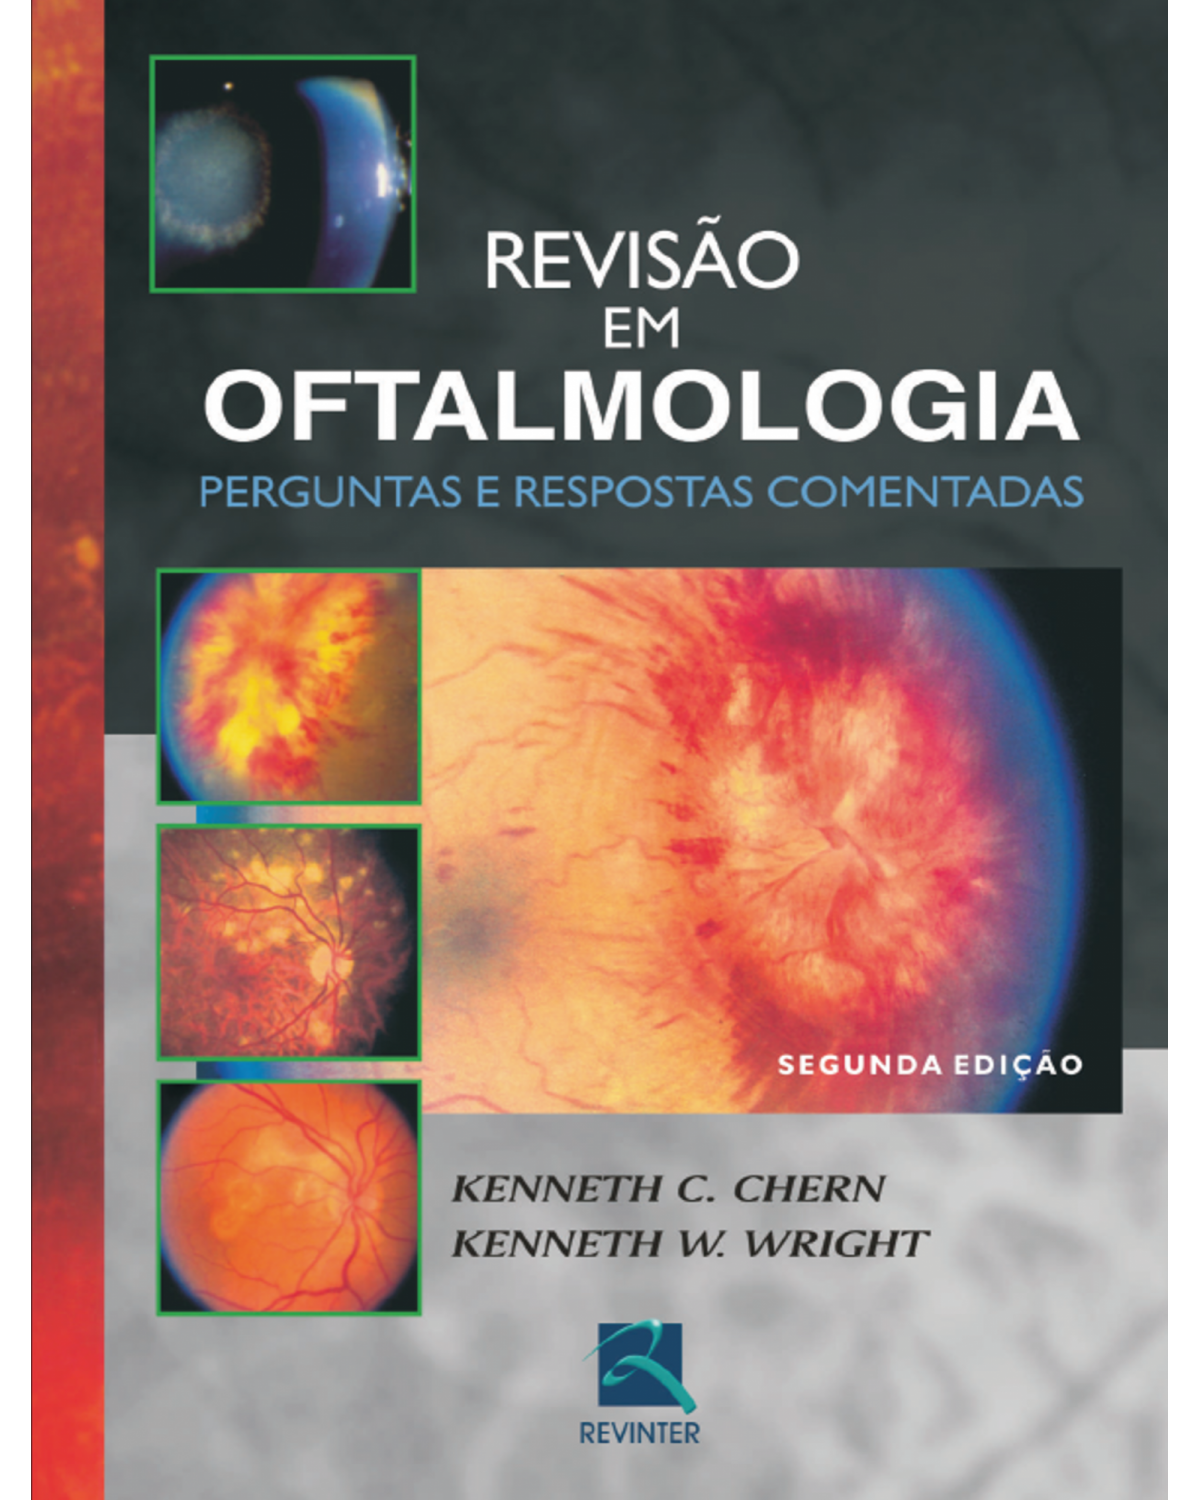 Revisão em oftalmologia - perguntas e respostas comentadas - 2ª Edição | 2008